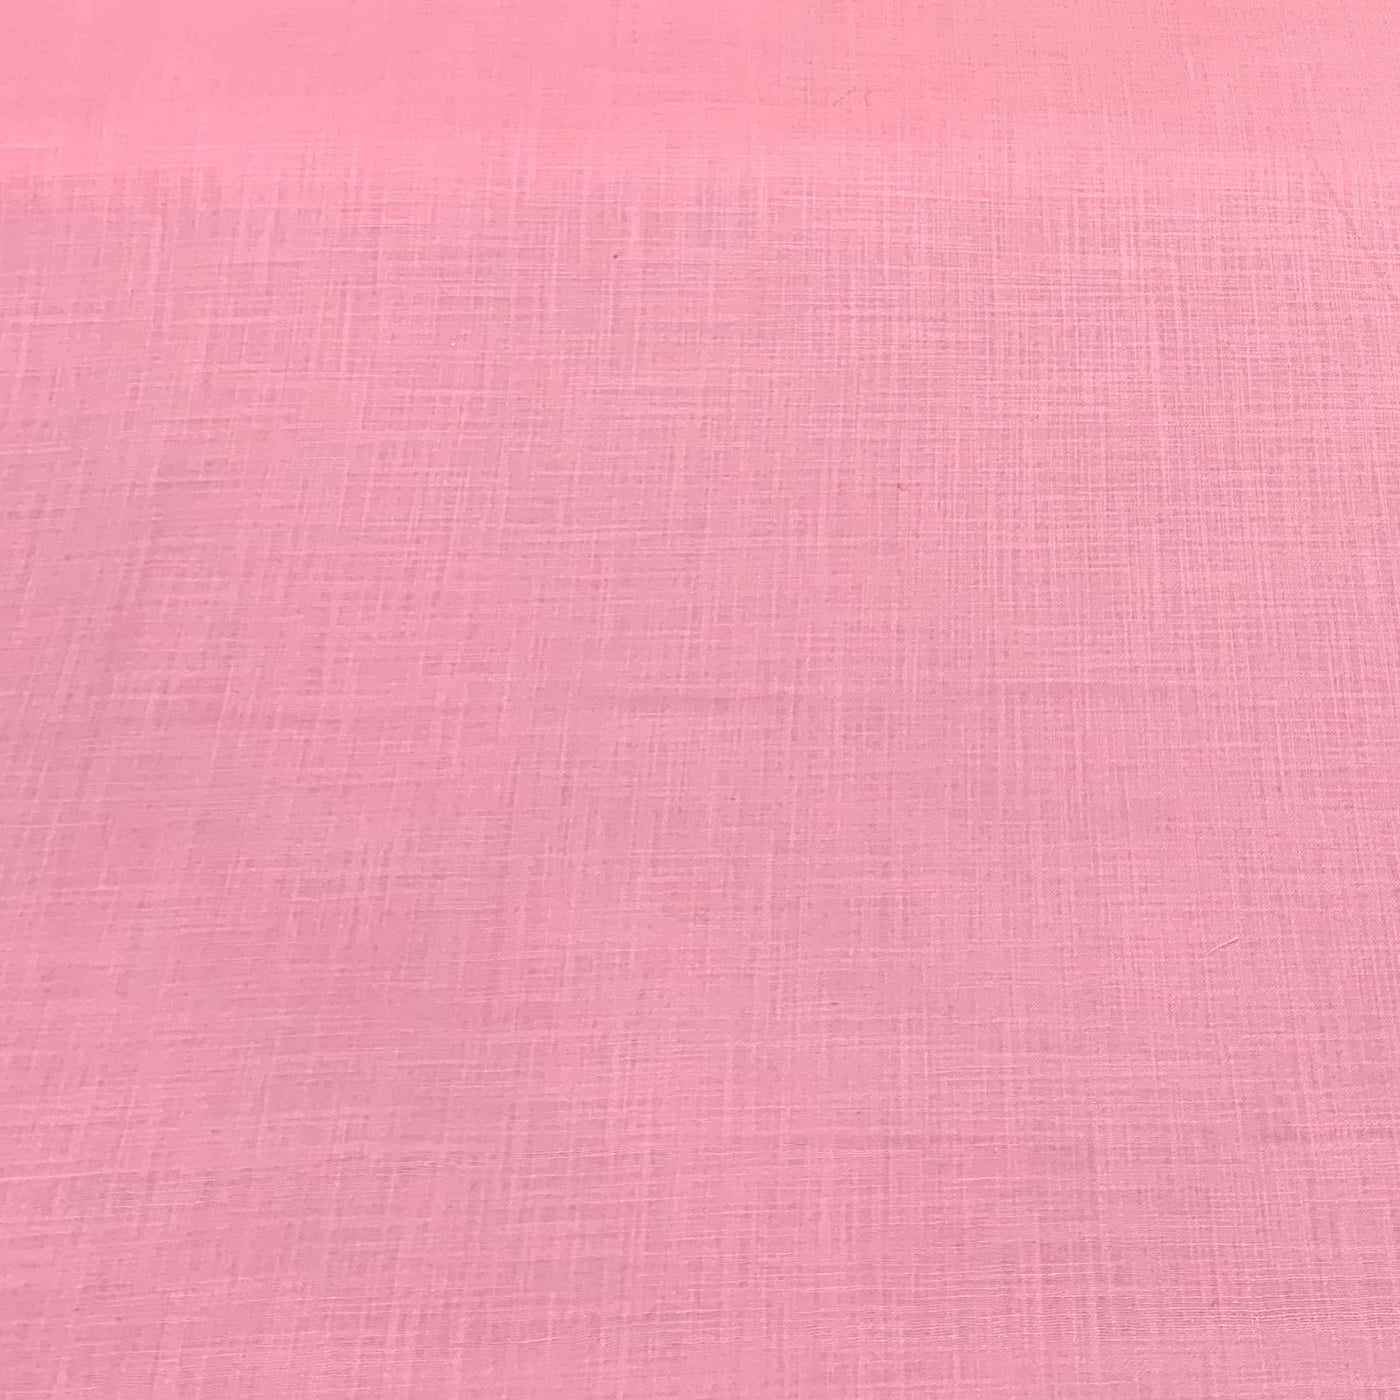 Baby Pink Plain Cotton Matka Fabric